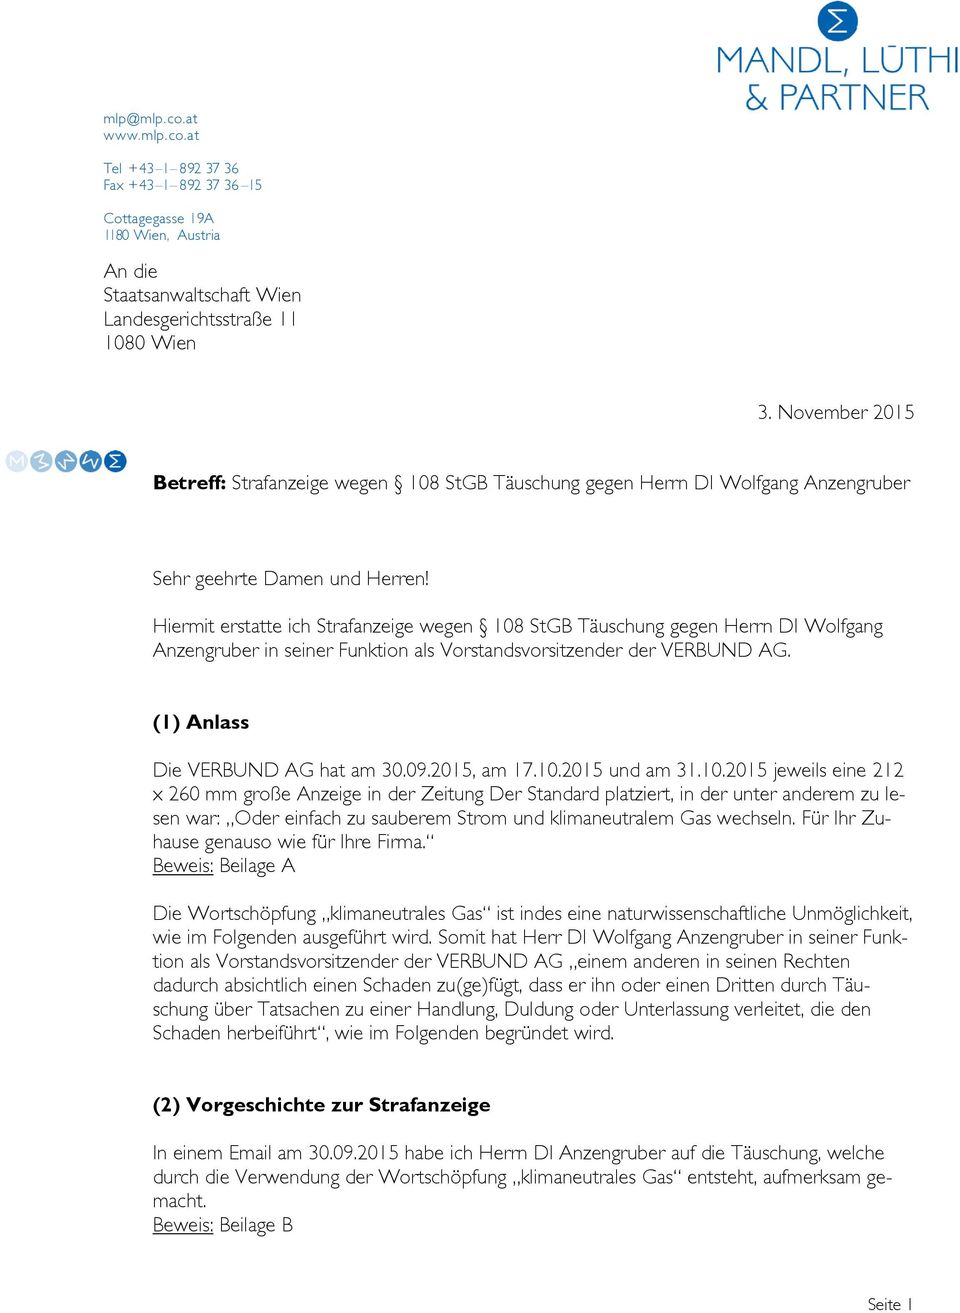 Hiermit erstatte ich wegen 108 StGB Täuschung gegen Herrn DI Wolfgang Anzengruber in seiner Funktion als Vorstandsvorsitzender der VERBUND AG. (1) Anlass Die VERBUND AG hat am 30.09.2015, am 17.10.2015 und am 31.